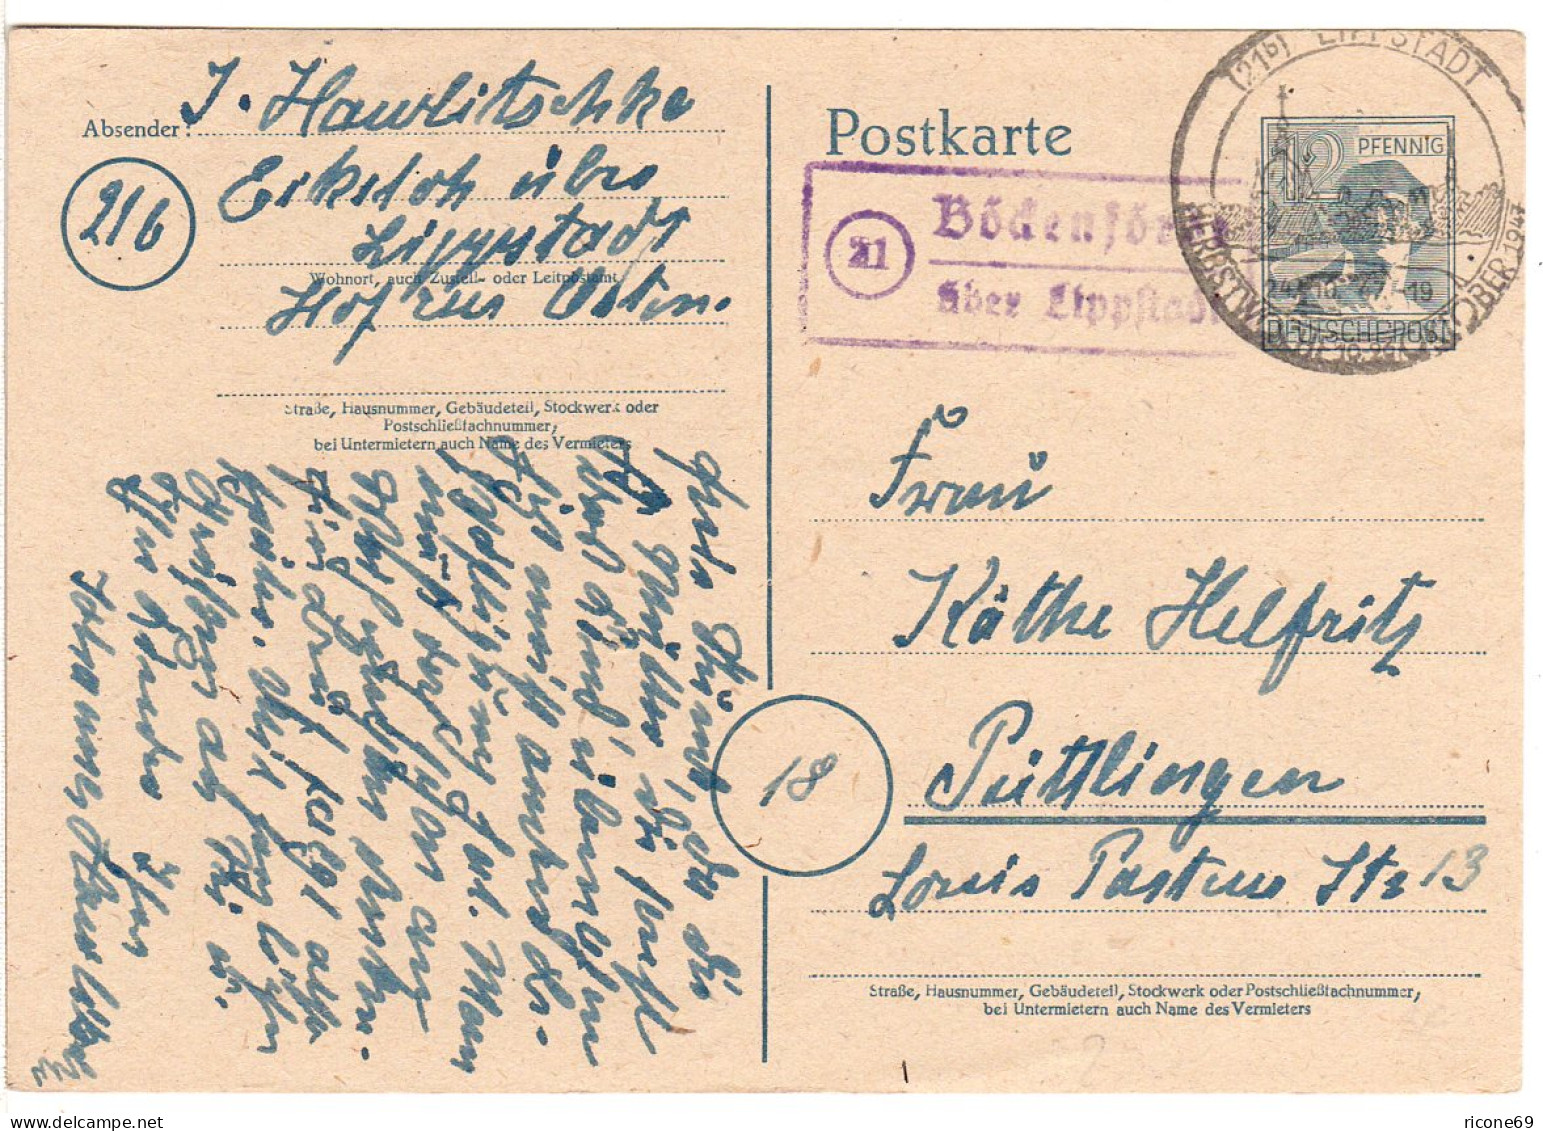 1947, Landpost Stpl. 21 BÖCKENFÖRDE über Lippstadt Auf 12 Pf. Ganzsache - Lettres & Documents